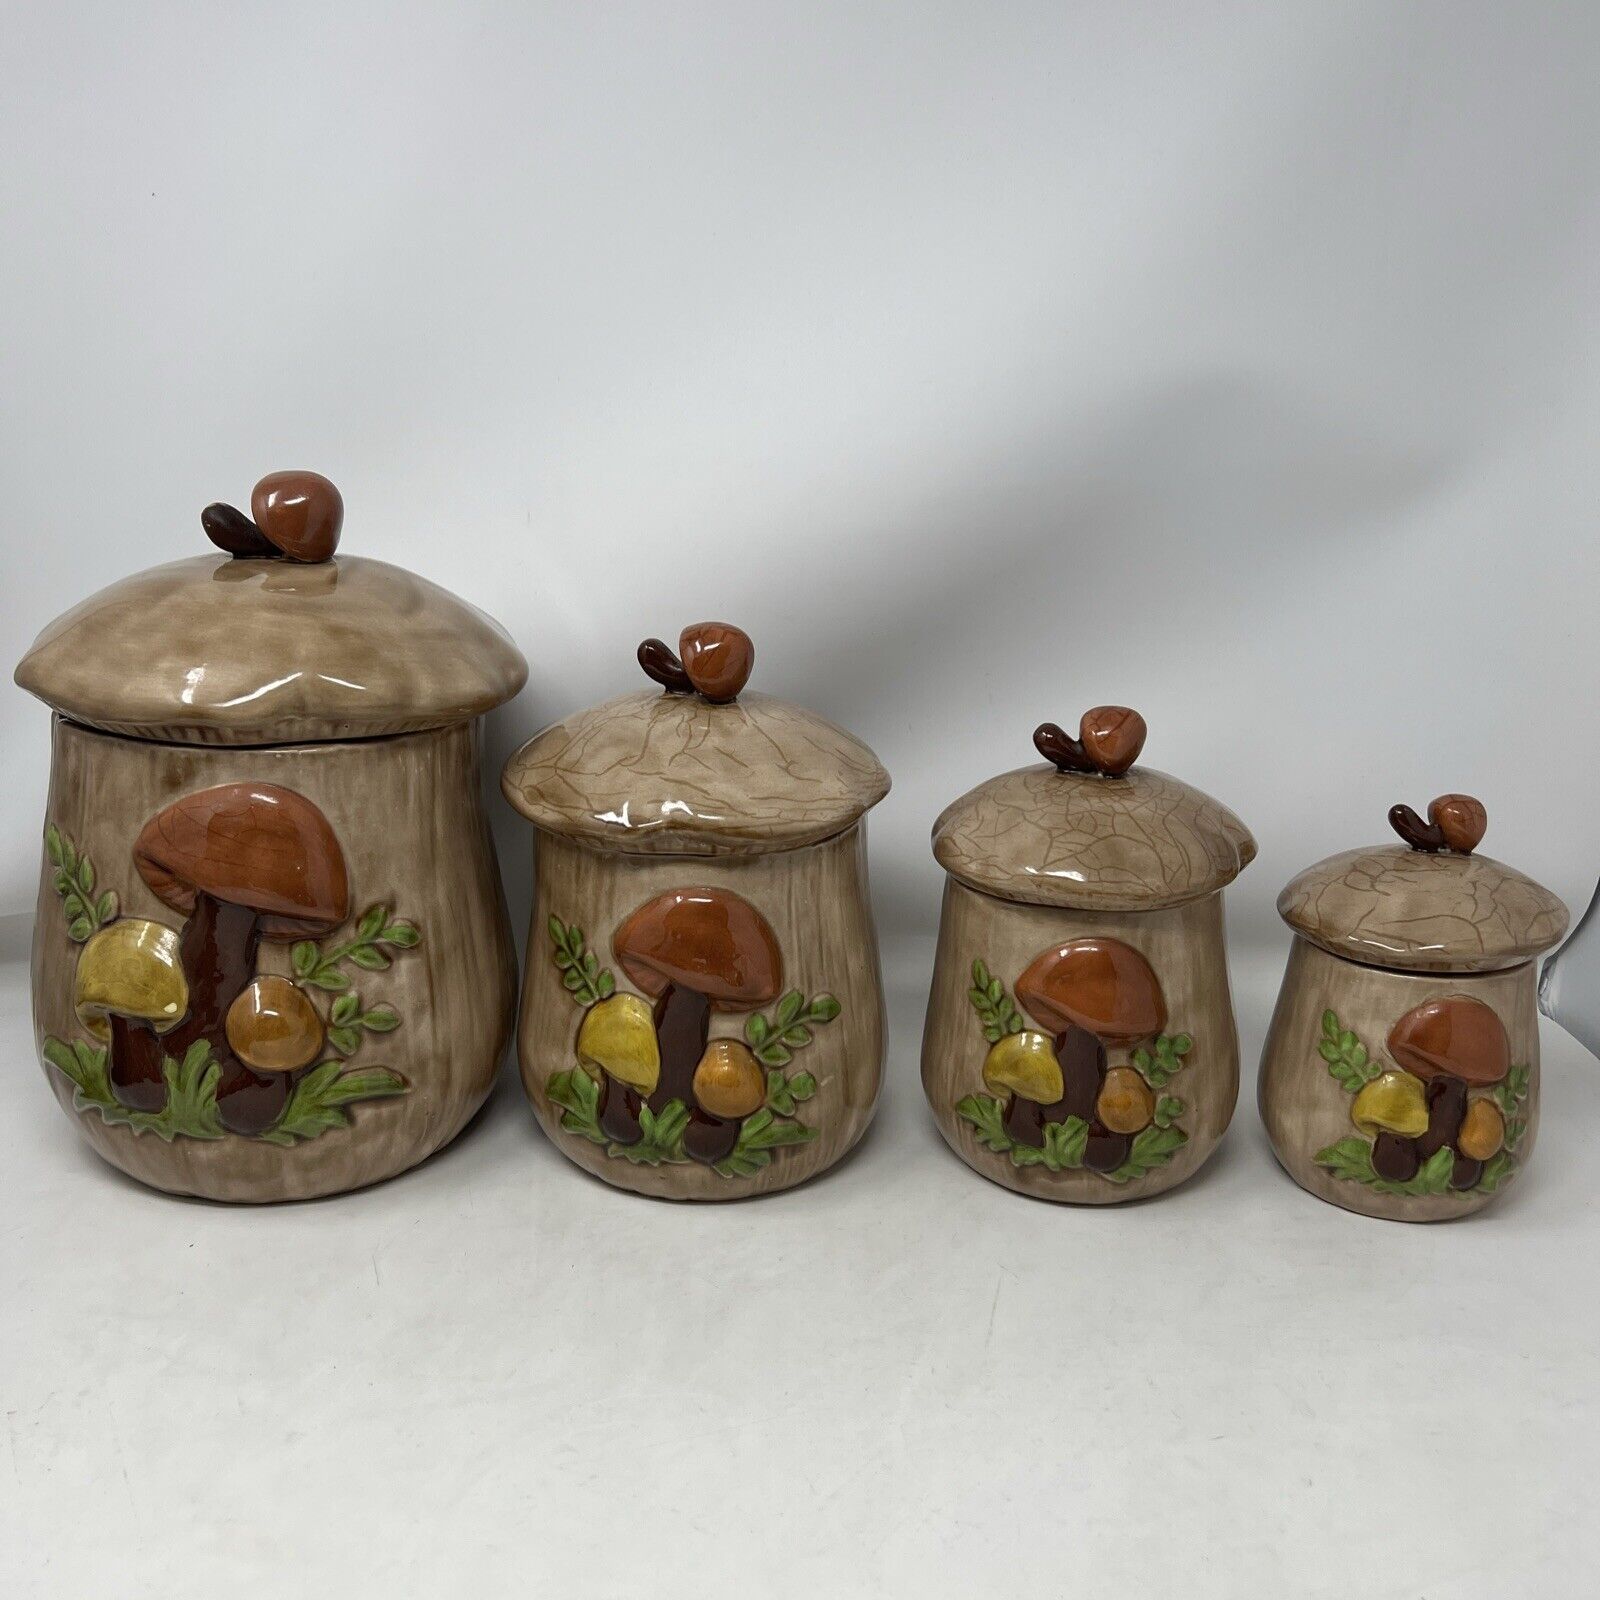 Vintage Brown Ceramic Mushroom Canister 4 Piece Set